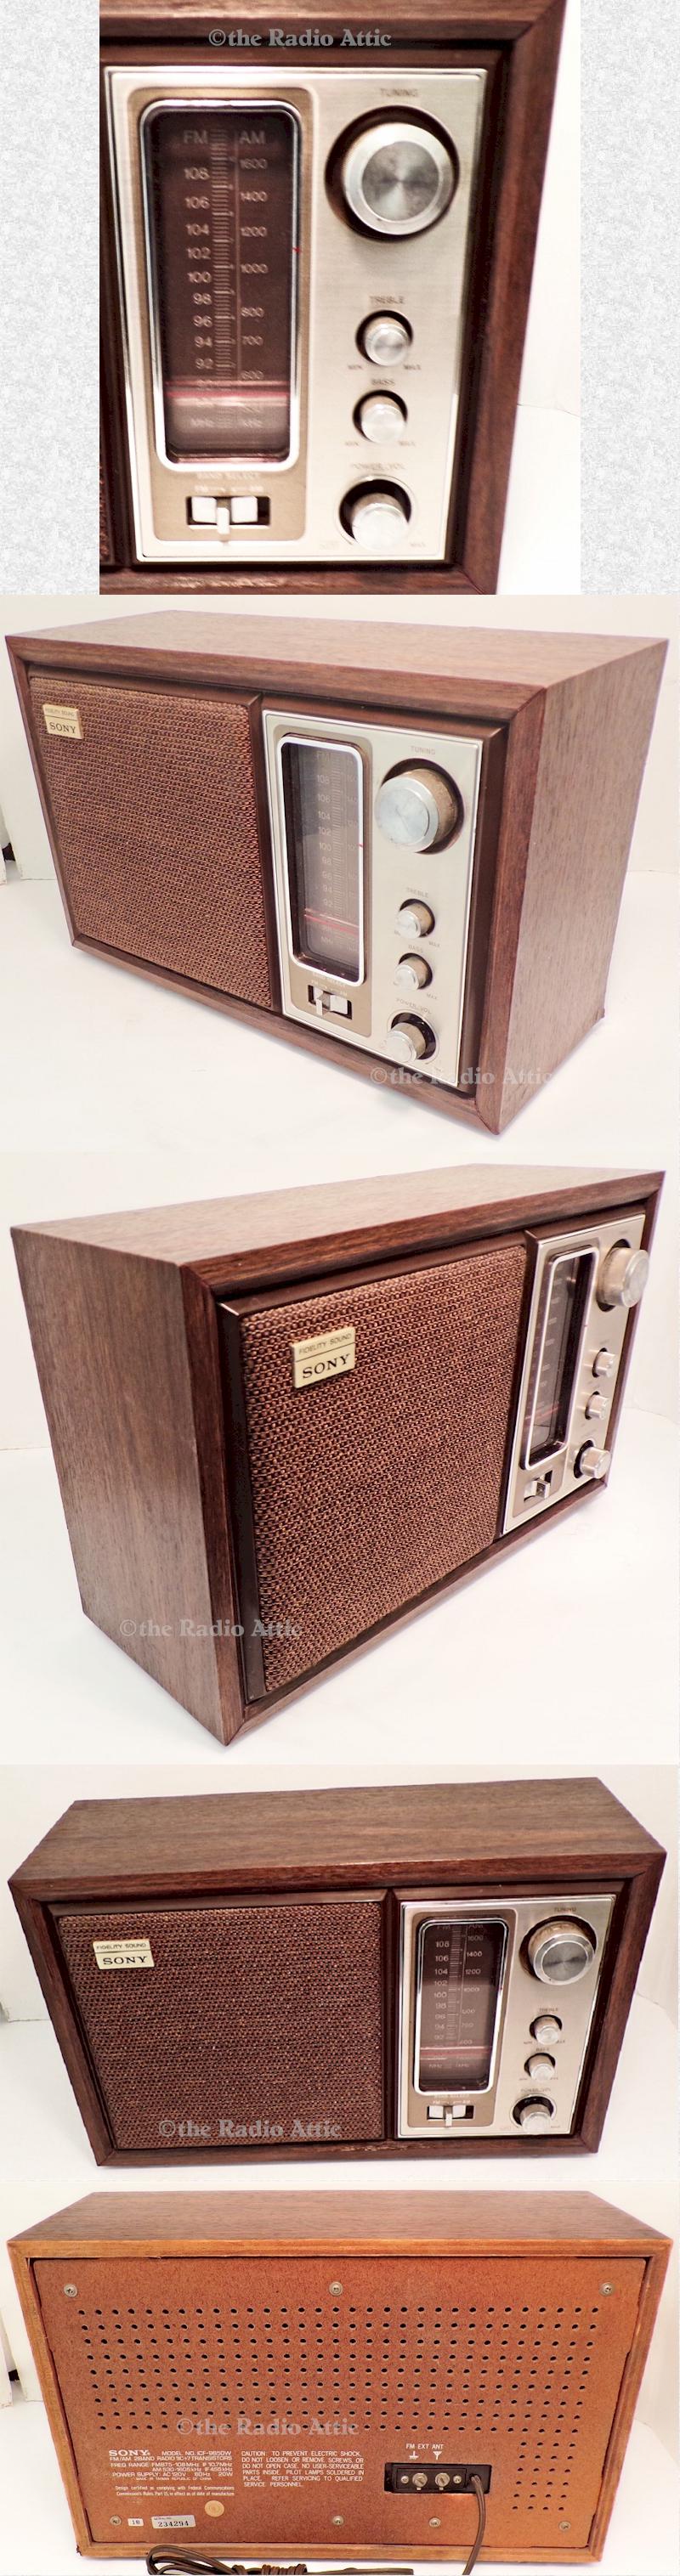 Sony 9650W (early 1960s)